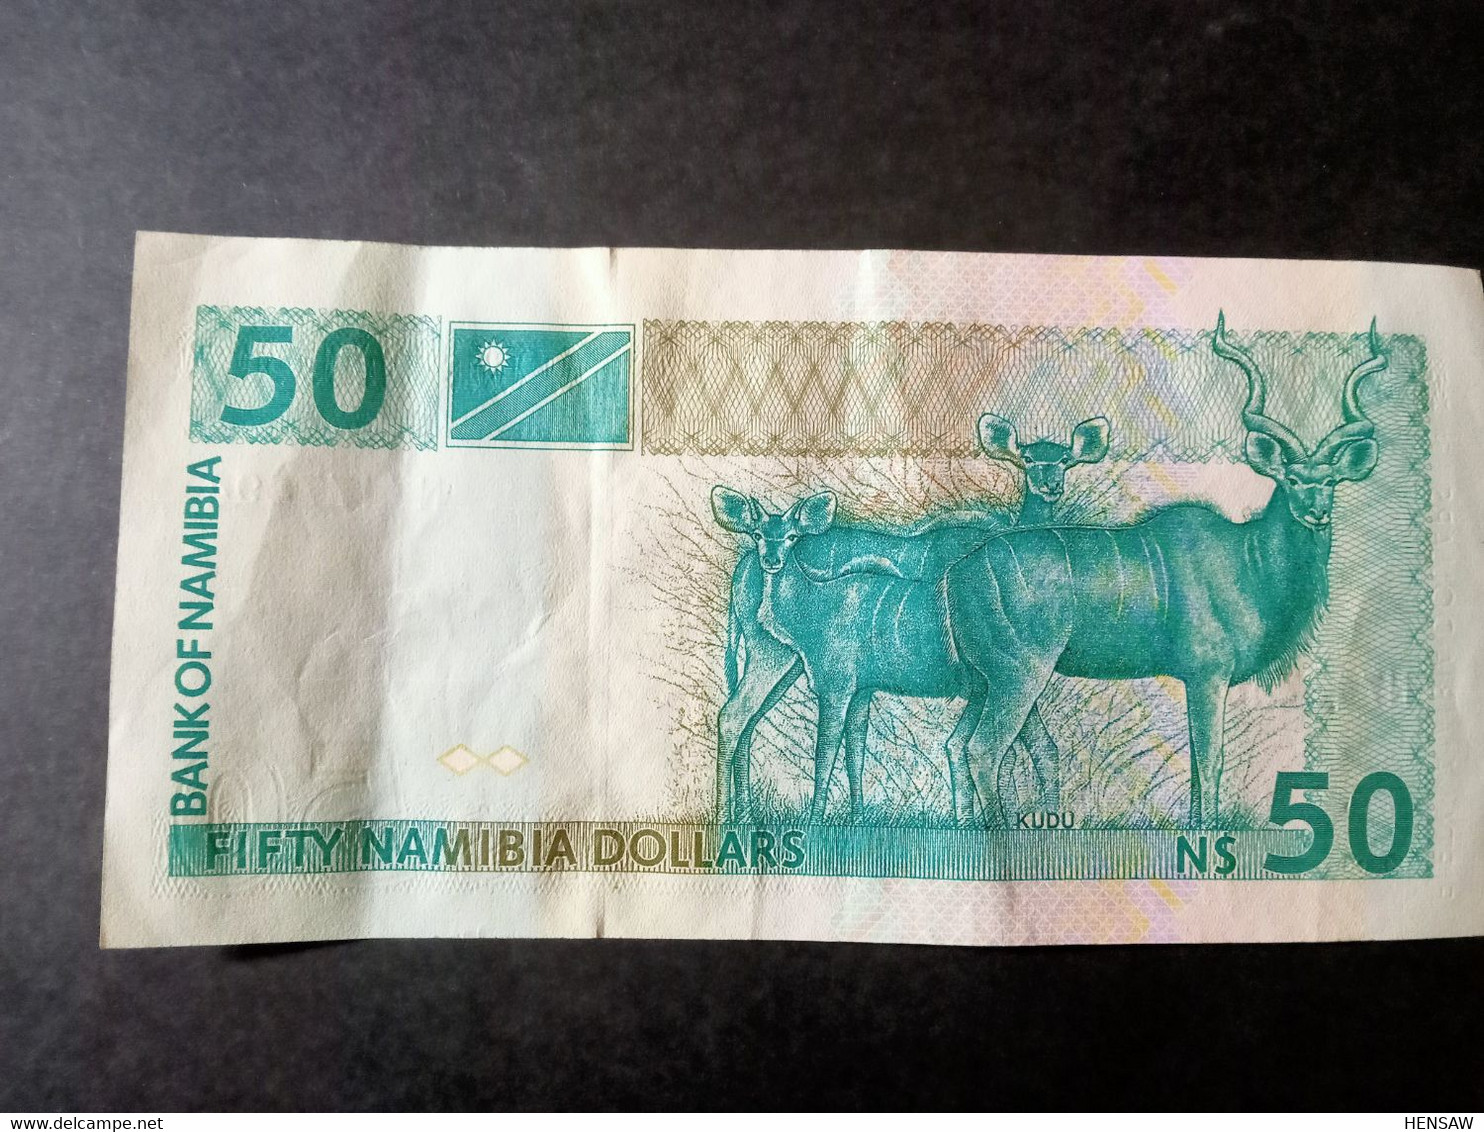 NAMIBIA 50 DOLLARS P 2 1993 USED USADO XF - Namibië